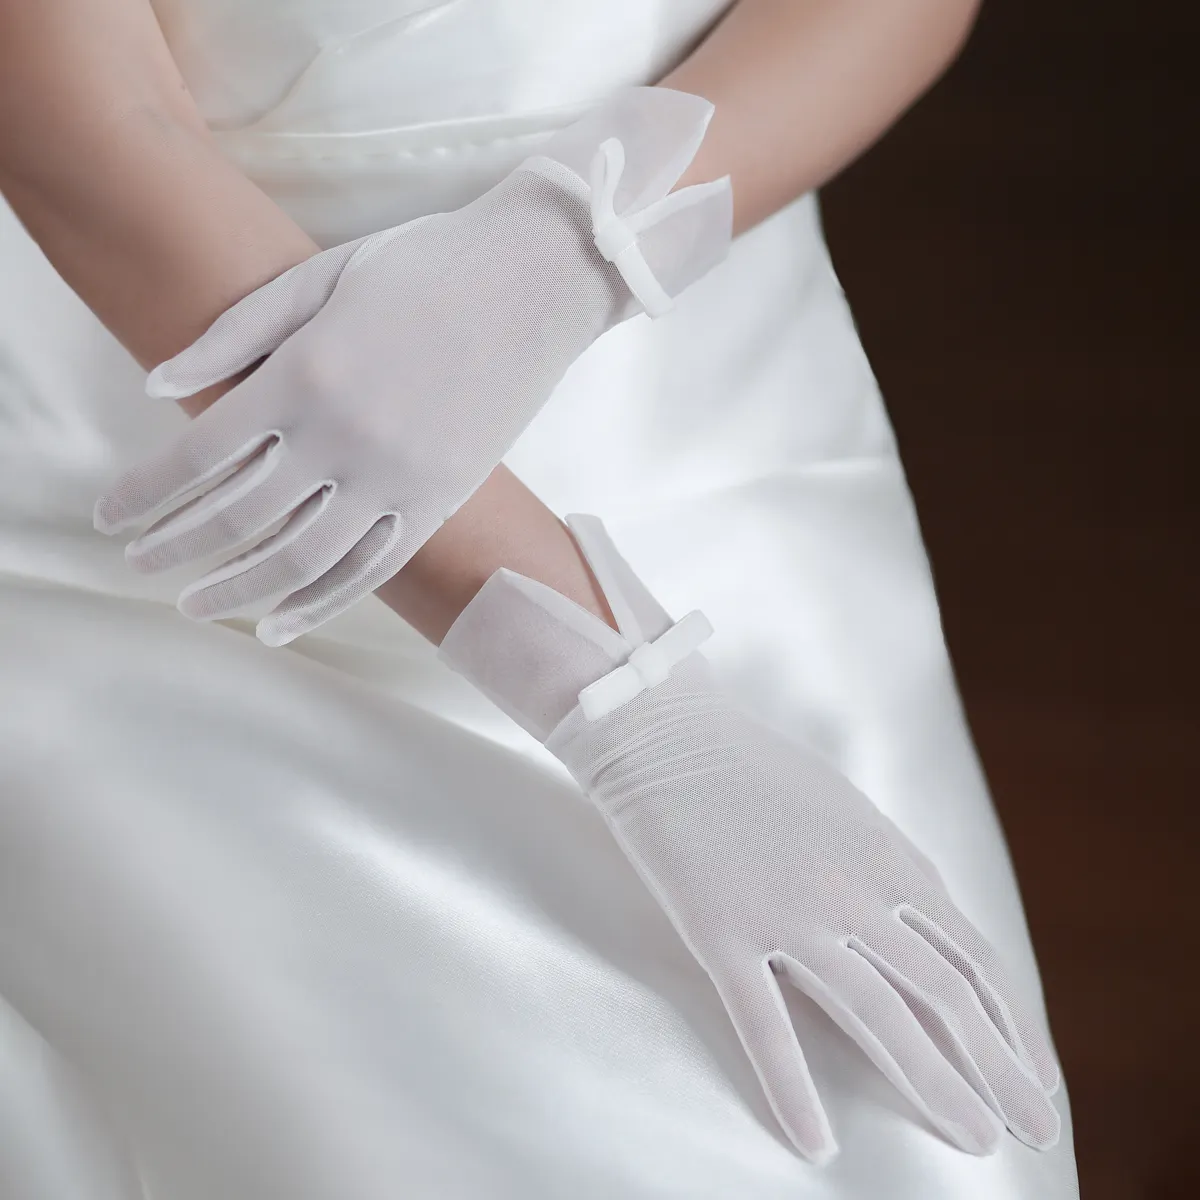 सुंदर सफेद छोटी आंत की उंगलियों की तितली शादी के दस्ताने-पतली हाथों के लिए सुंदर दुल्हन के लिए एकदम सही